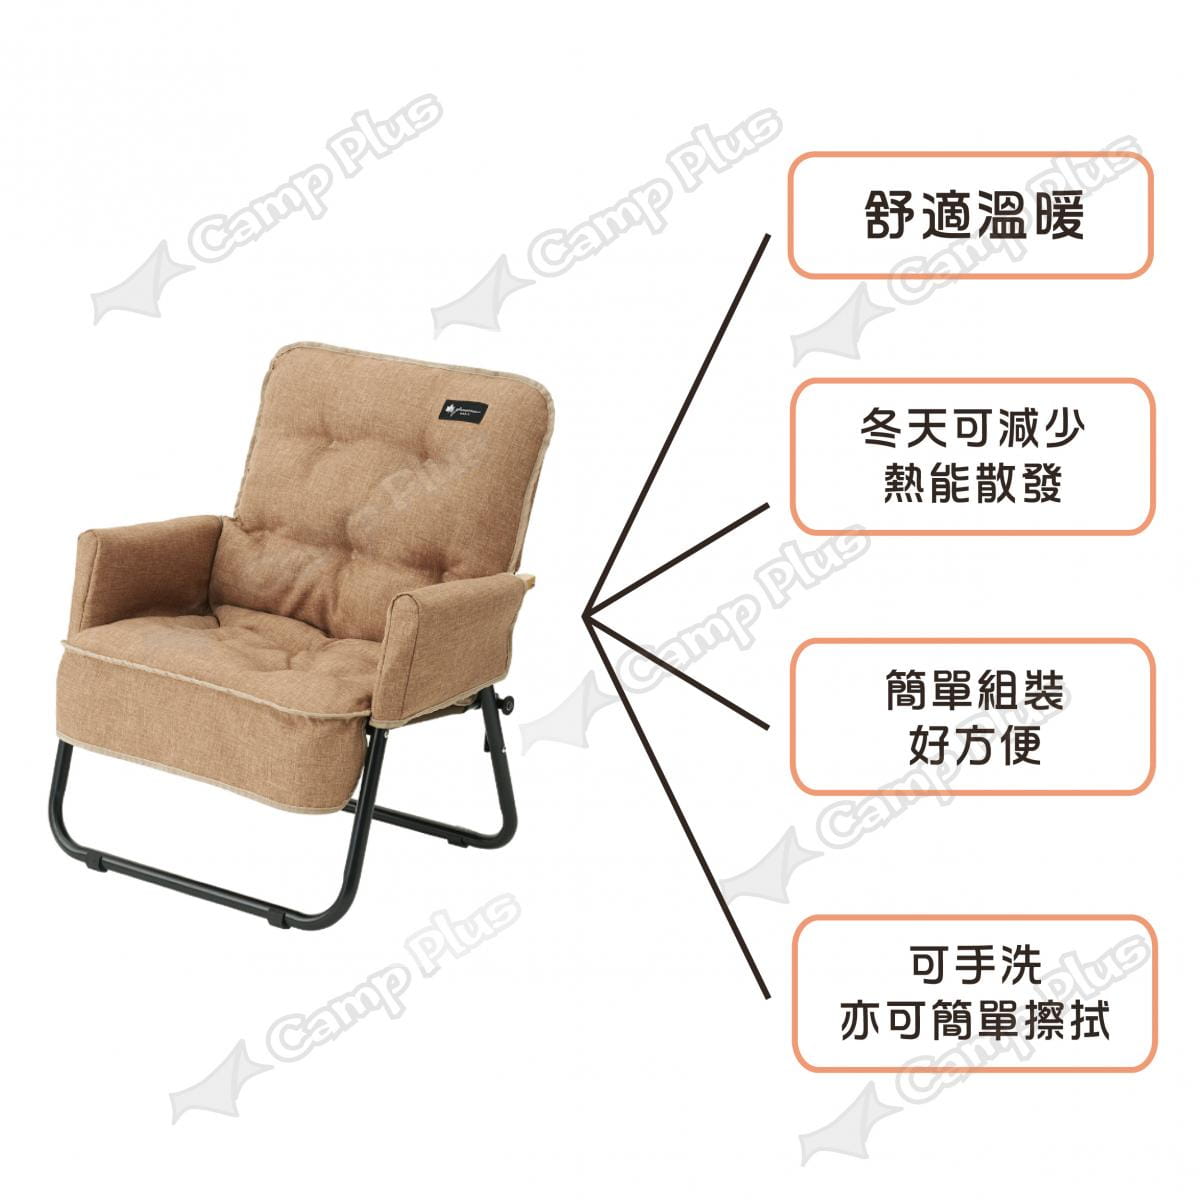 【日本LOGOS】 低腳單人椅專用椅套 LG73174039 (悠遊戶外) 2